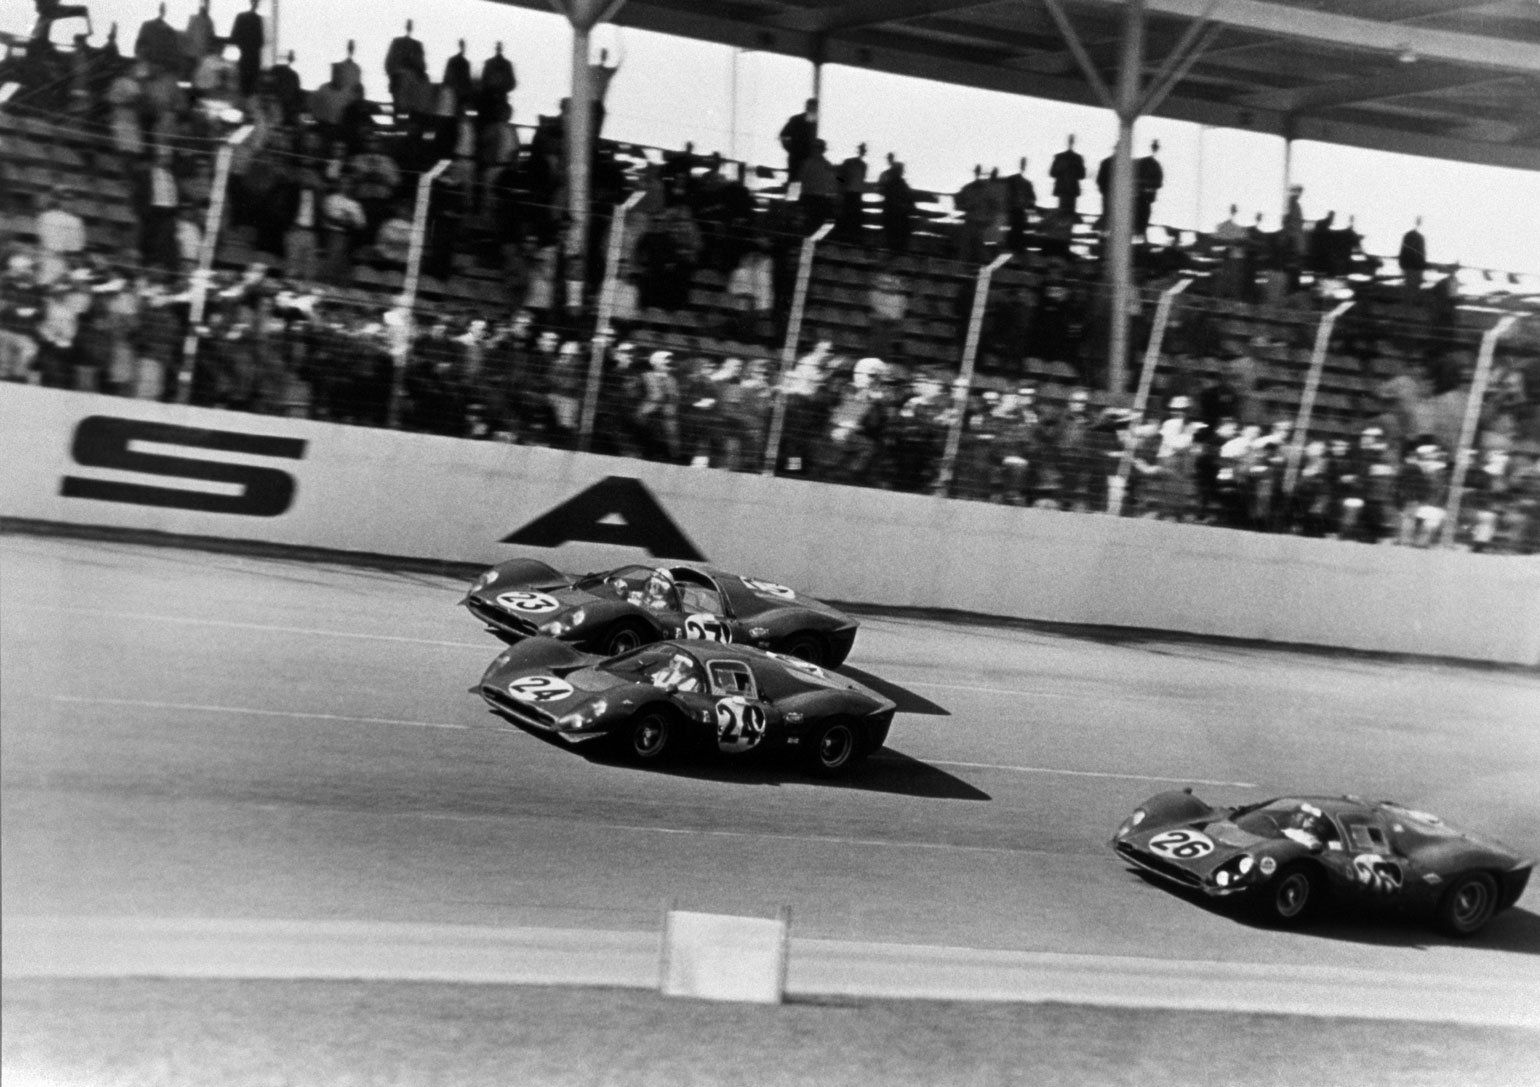 Daytona 1967 – als der dreifach Triumph von Ferrari für ein ikonisches Sportfoto sorgte!